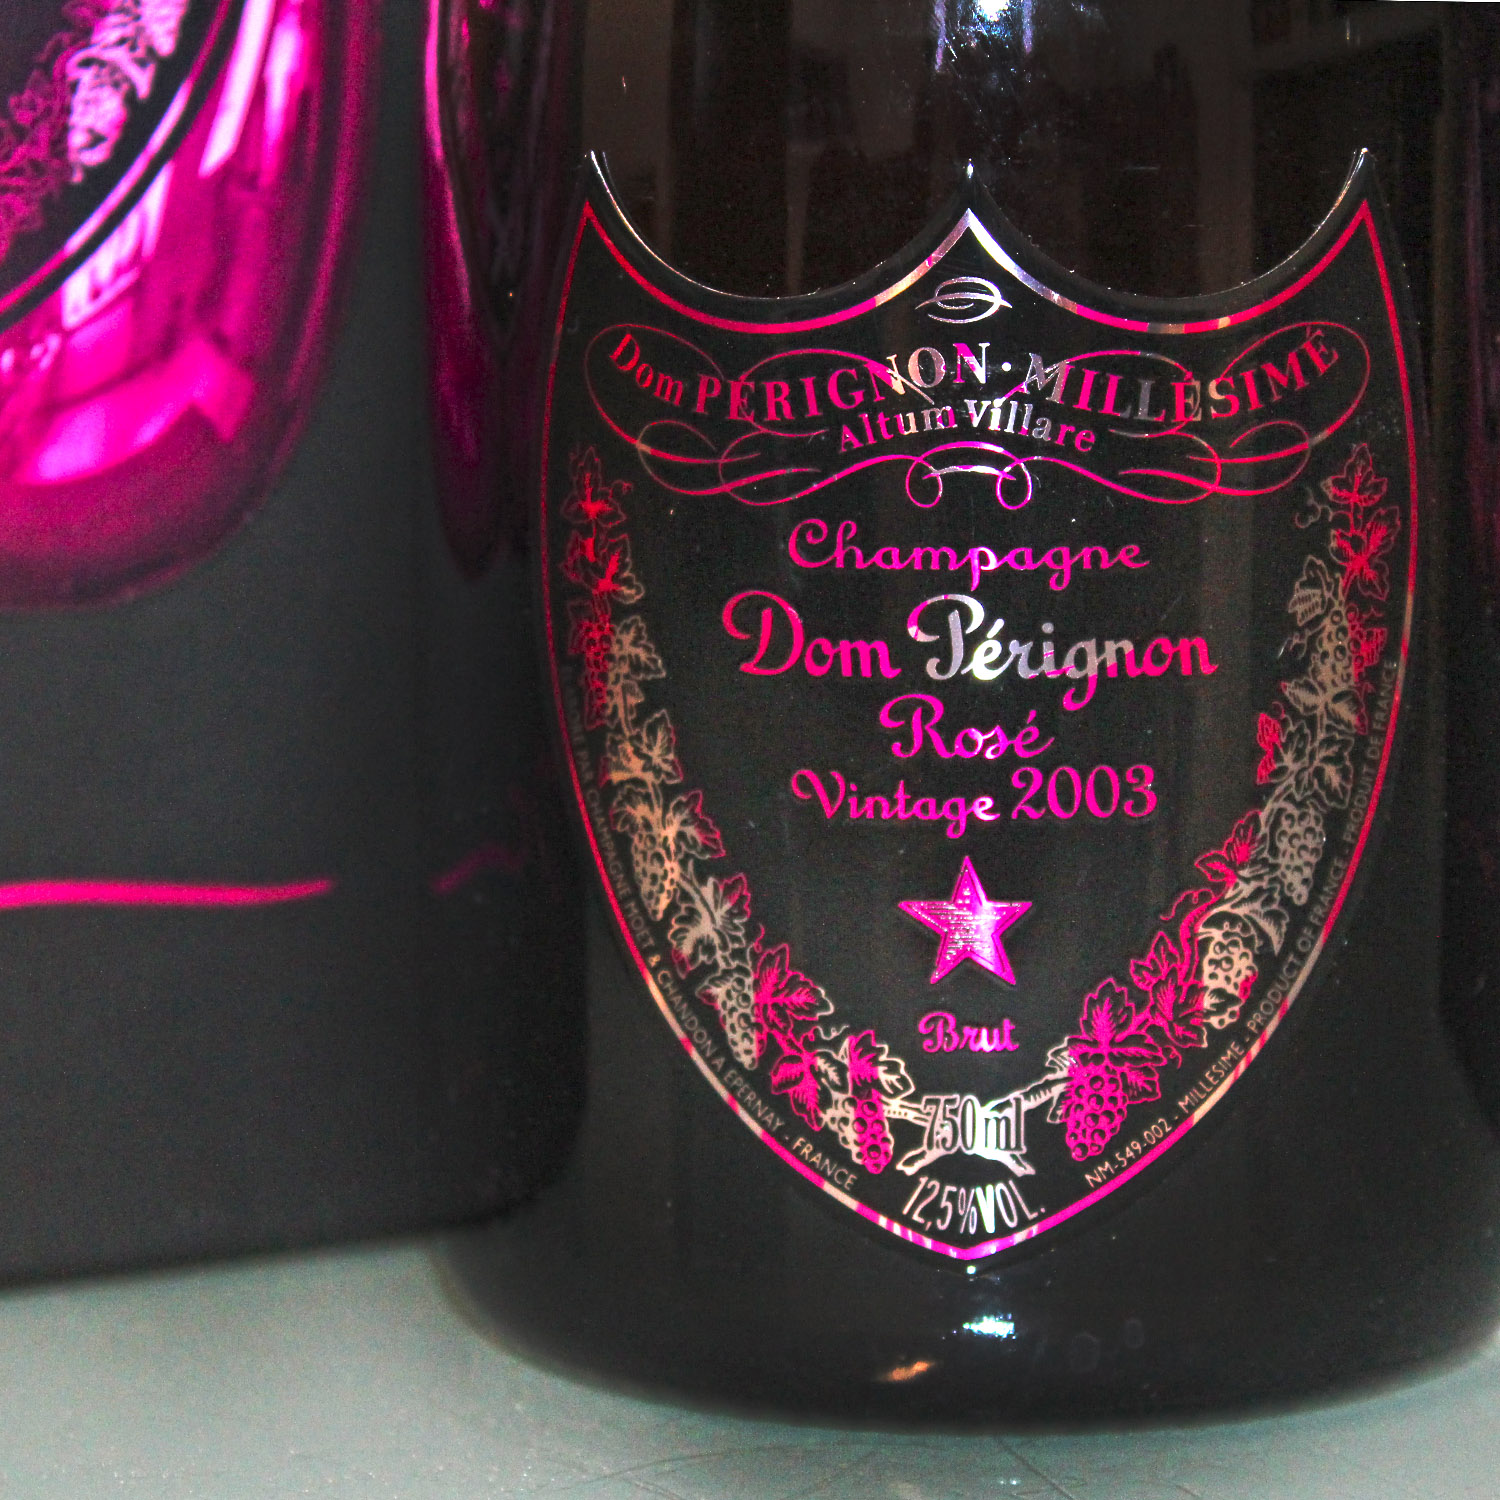 Dom Perignon Rose Vintage Champagner 2003 Jeff Koons Edition Label